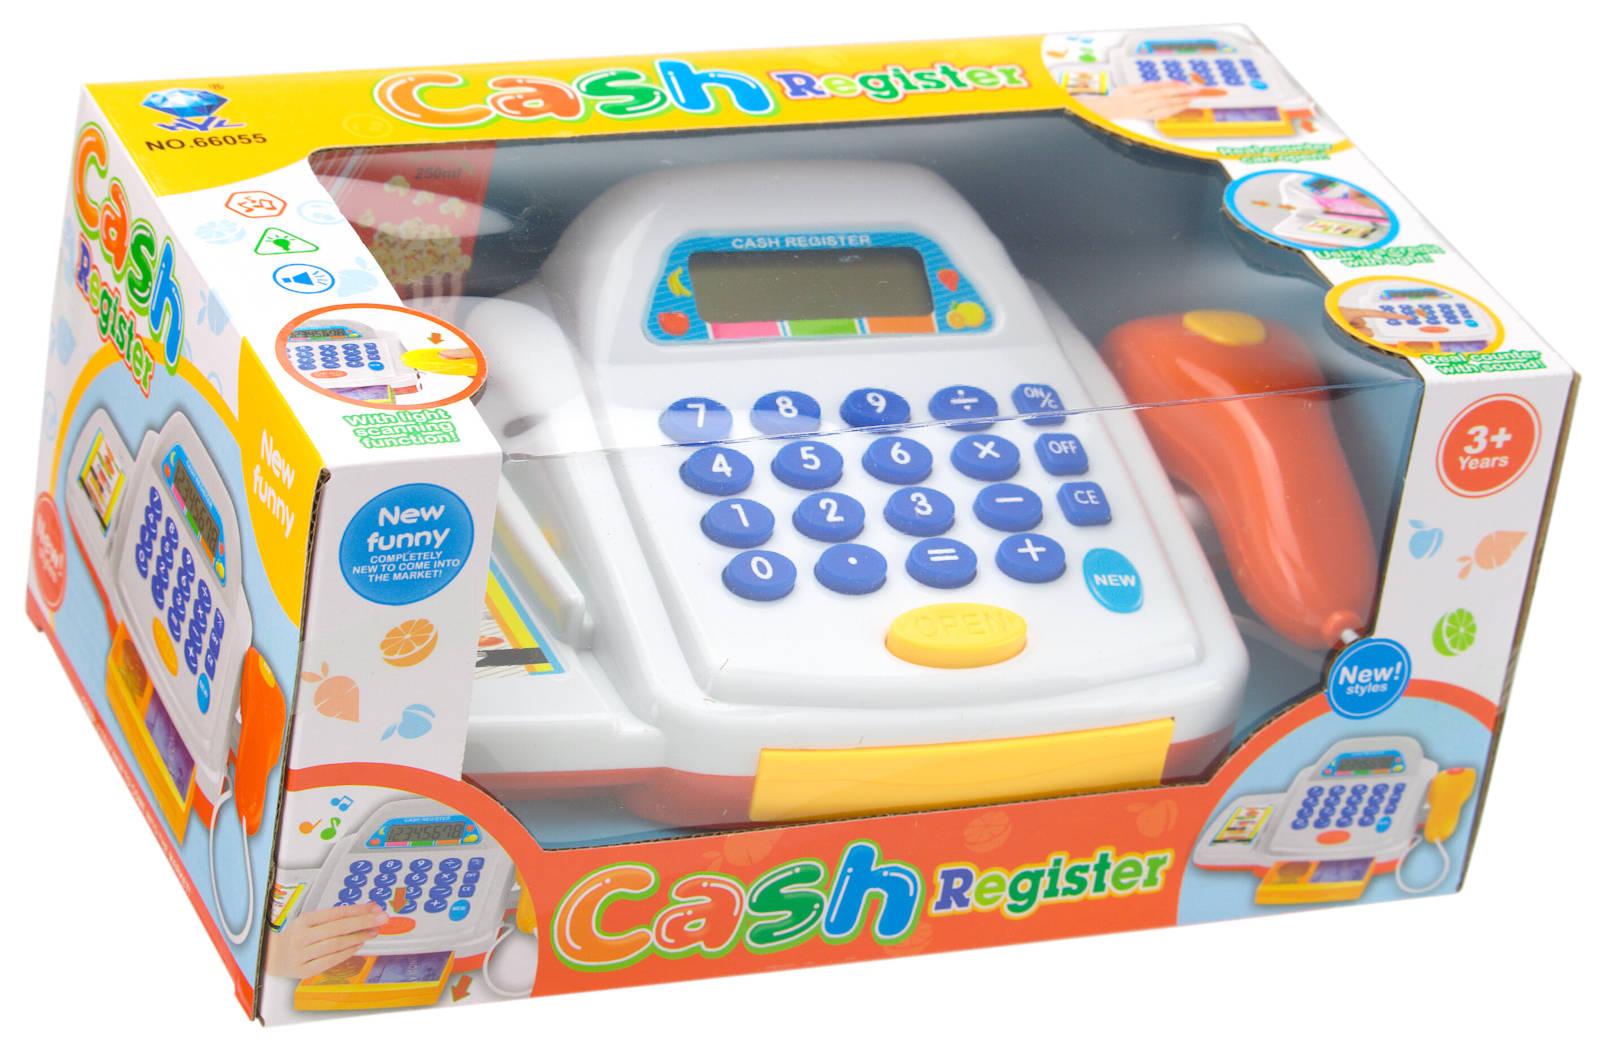 Kinderkasse Kinder Kaufladen Kasse mit Scanner Kreditkarte Spielgeld Zubehör Reg 